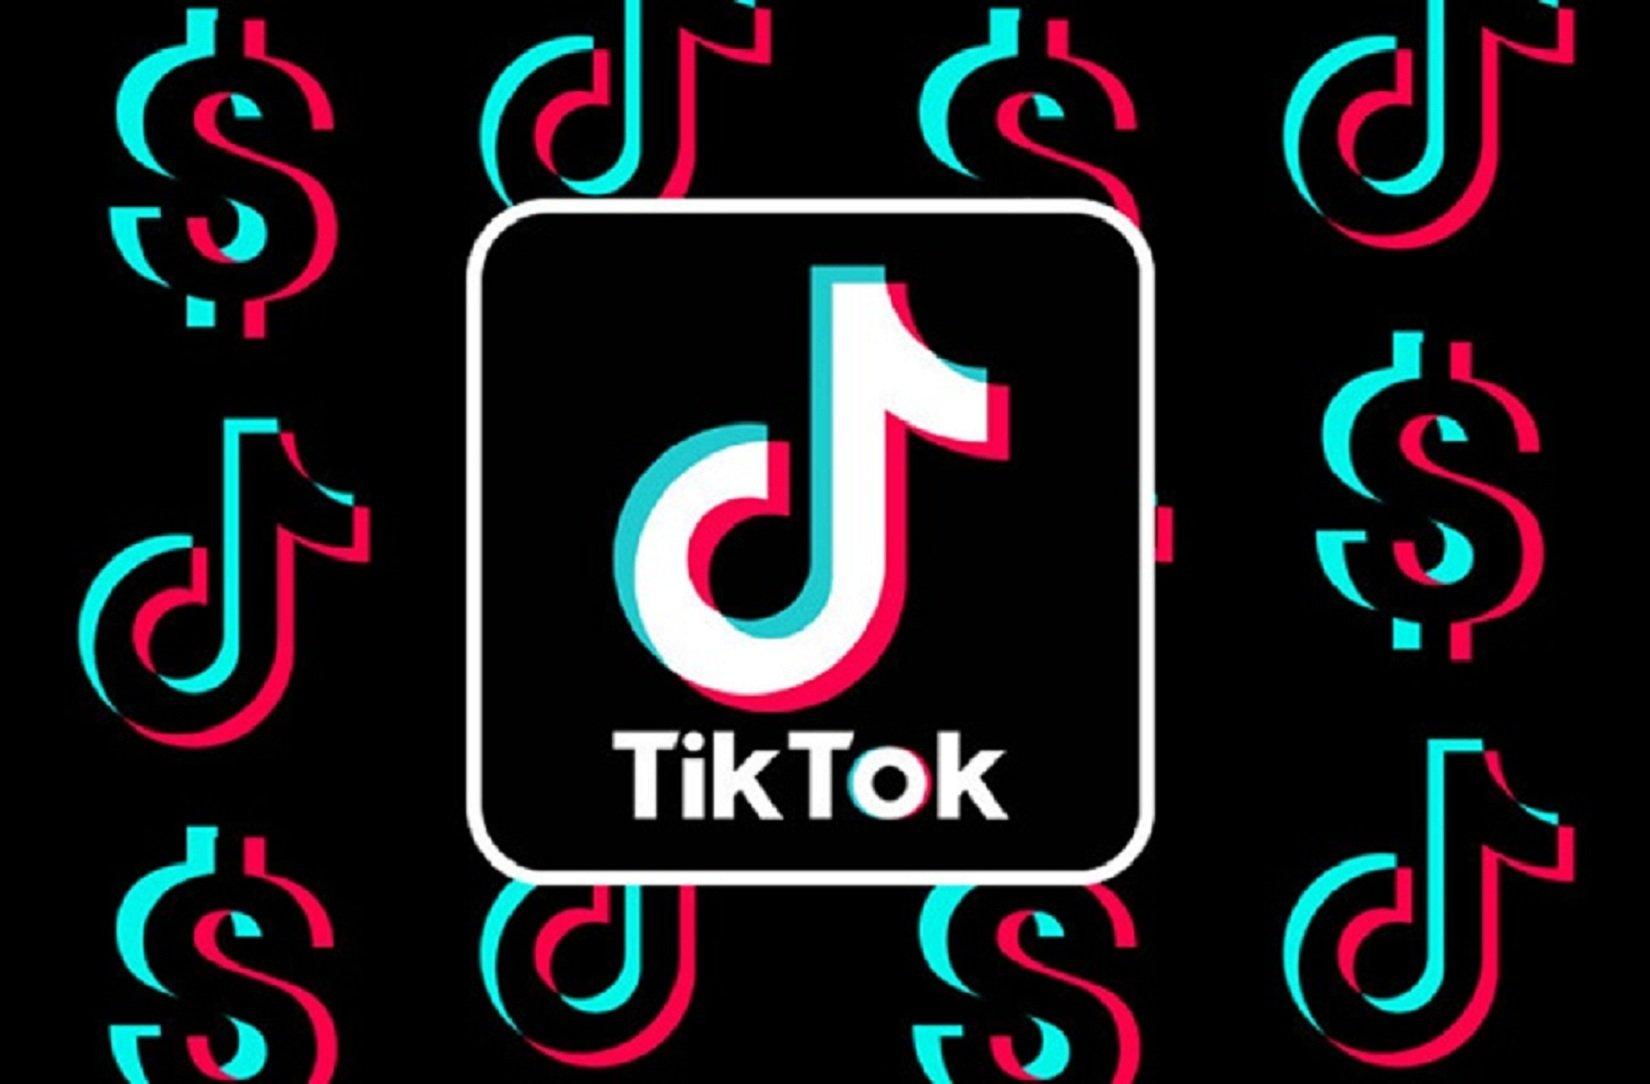 Hãy nghe và cảm nhận nhịp điệu đầy sức sống của những bài hát TikTok đang được yêu thích nhất hiện nay. Với nhạc TikTok, bạn có thể tạo ra các video tuyệt vời và thể hiện được tài năng điệu nhảy của mình. Thật tuyệt vời khi có thể tham gia vào một cộng đồng tạo nội dung âm nhạc thú vị như vậy.